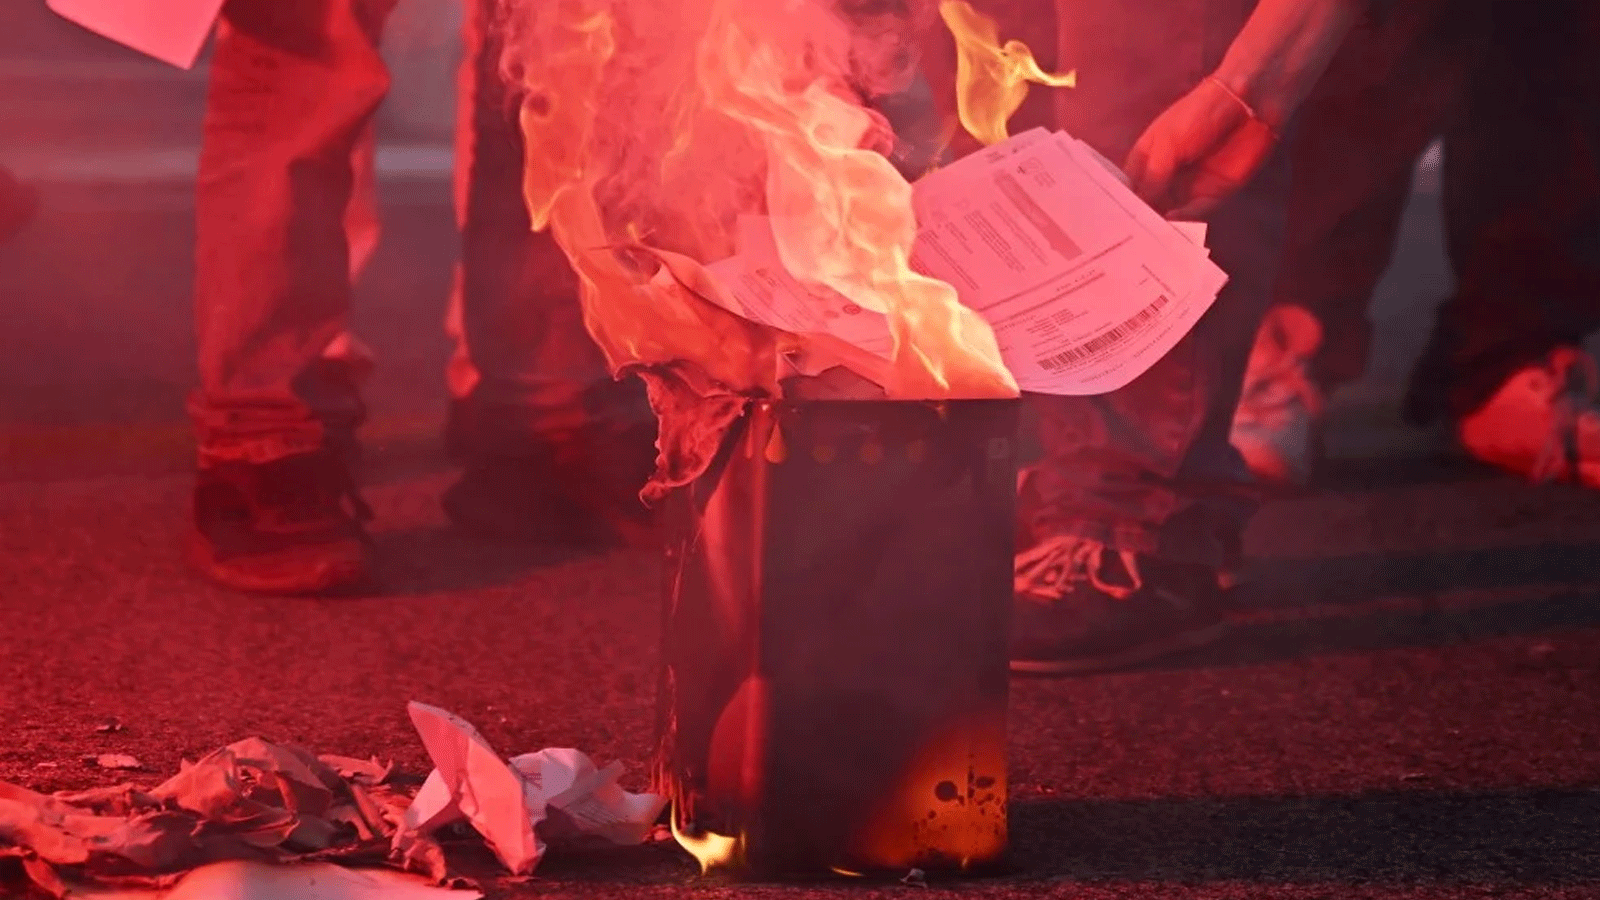 متظاهرون يحرقون فواتير الطاقة في روما خلال مظاهرة يوم 3 تشرين الأول\ أكتوبر 2022 ضد ارتفاع تكاليف المعيشة